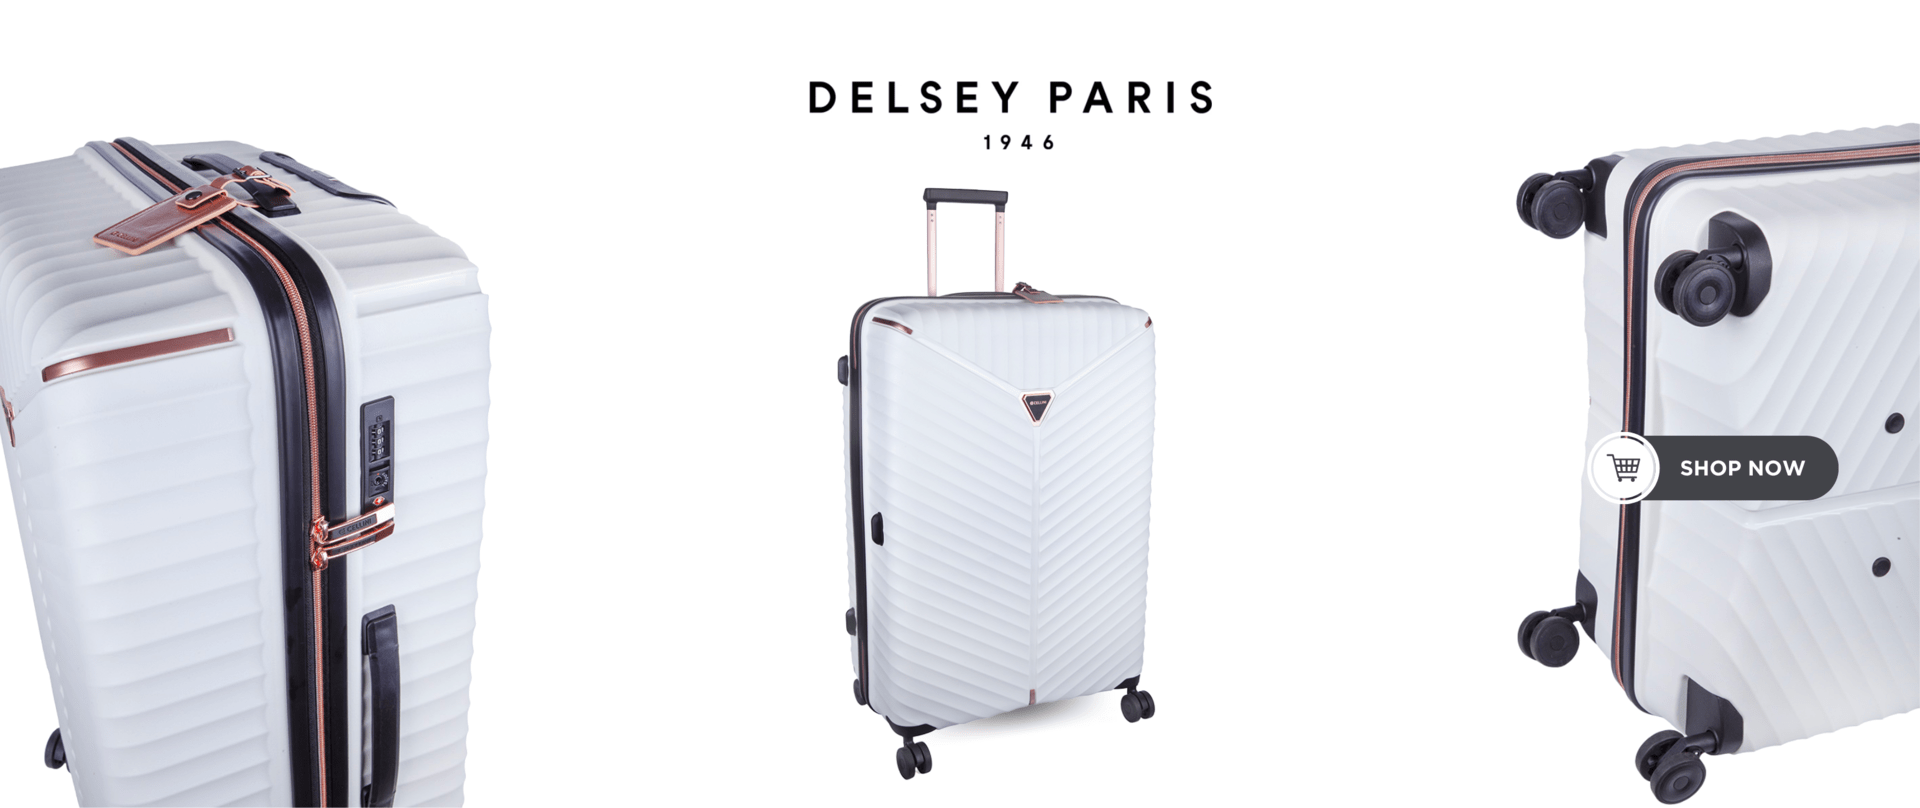 Delsey Paris Products